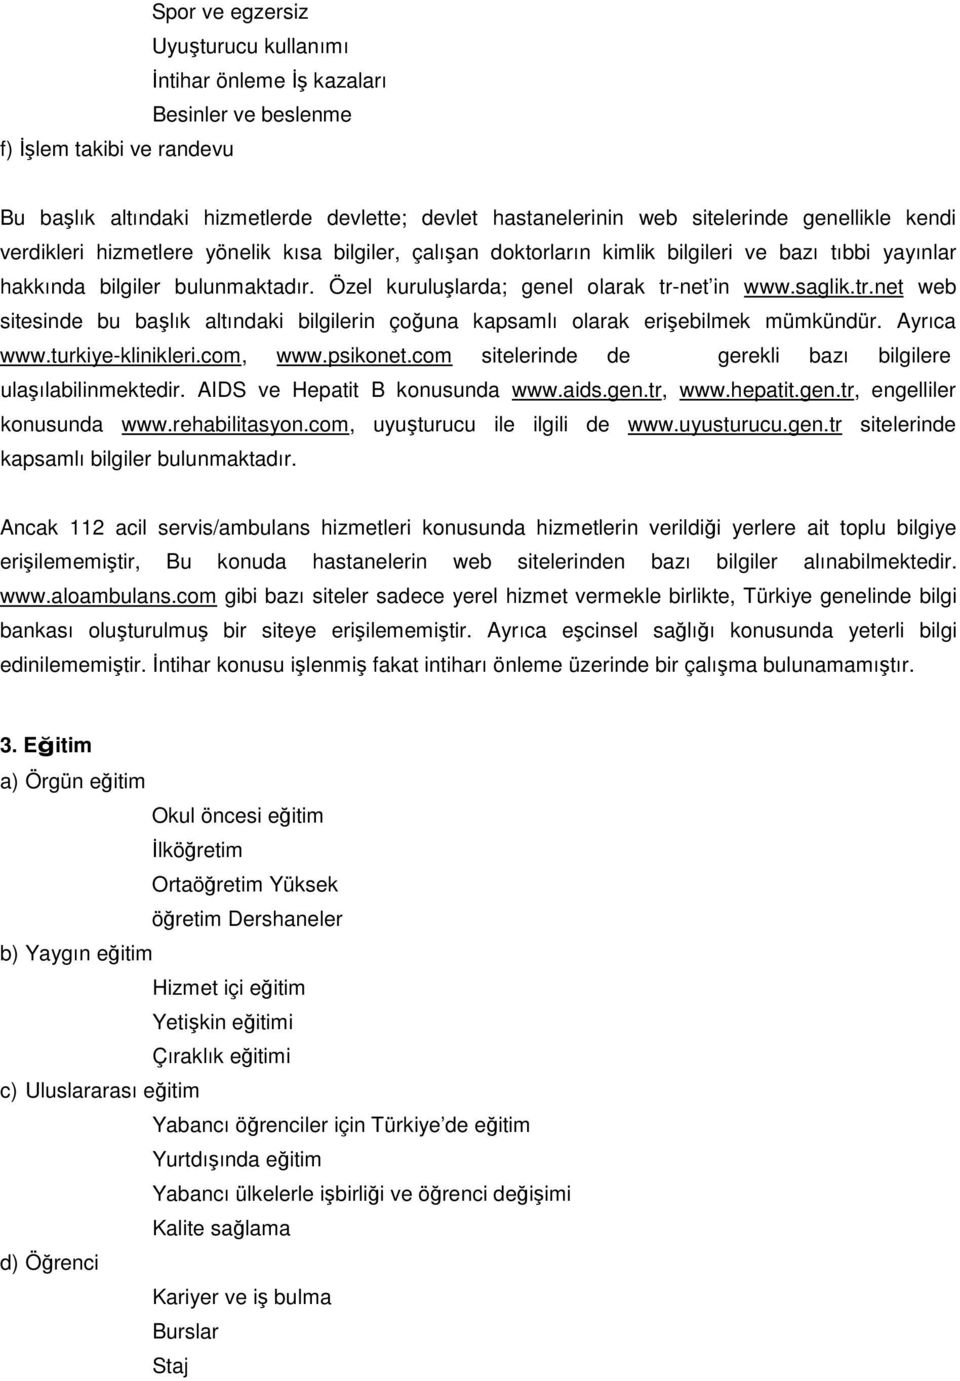 Özel kuruluşlarda; genel olarak tr-net in www.saglik.tr.net web sitesinde bu başlık altındaki bilgilerin çoğuna kapsamlı olarak erişebilmek mümkündür. Ayrıca www.turkiye-klinikleri.com, www.psikonet.